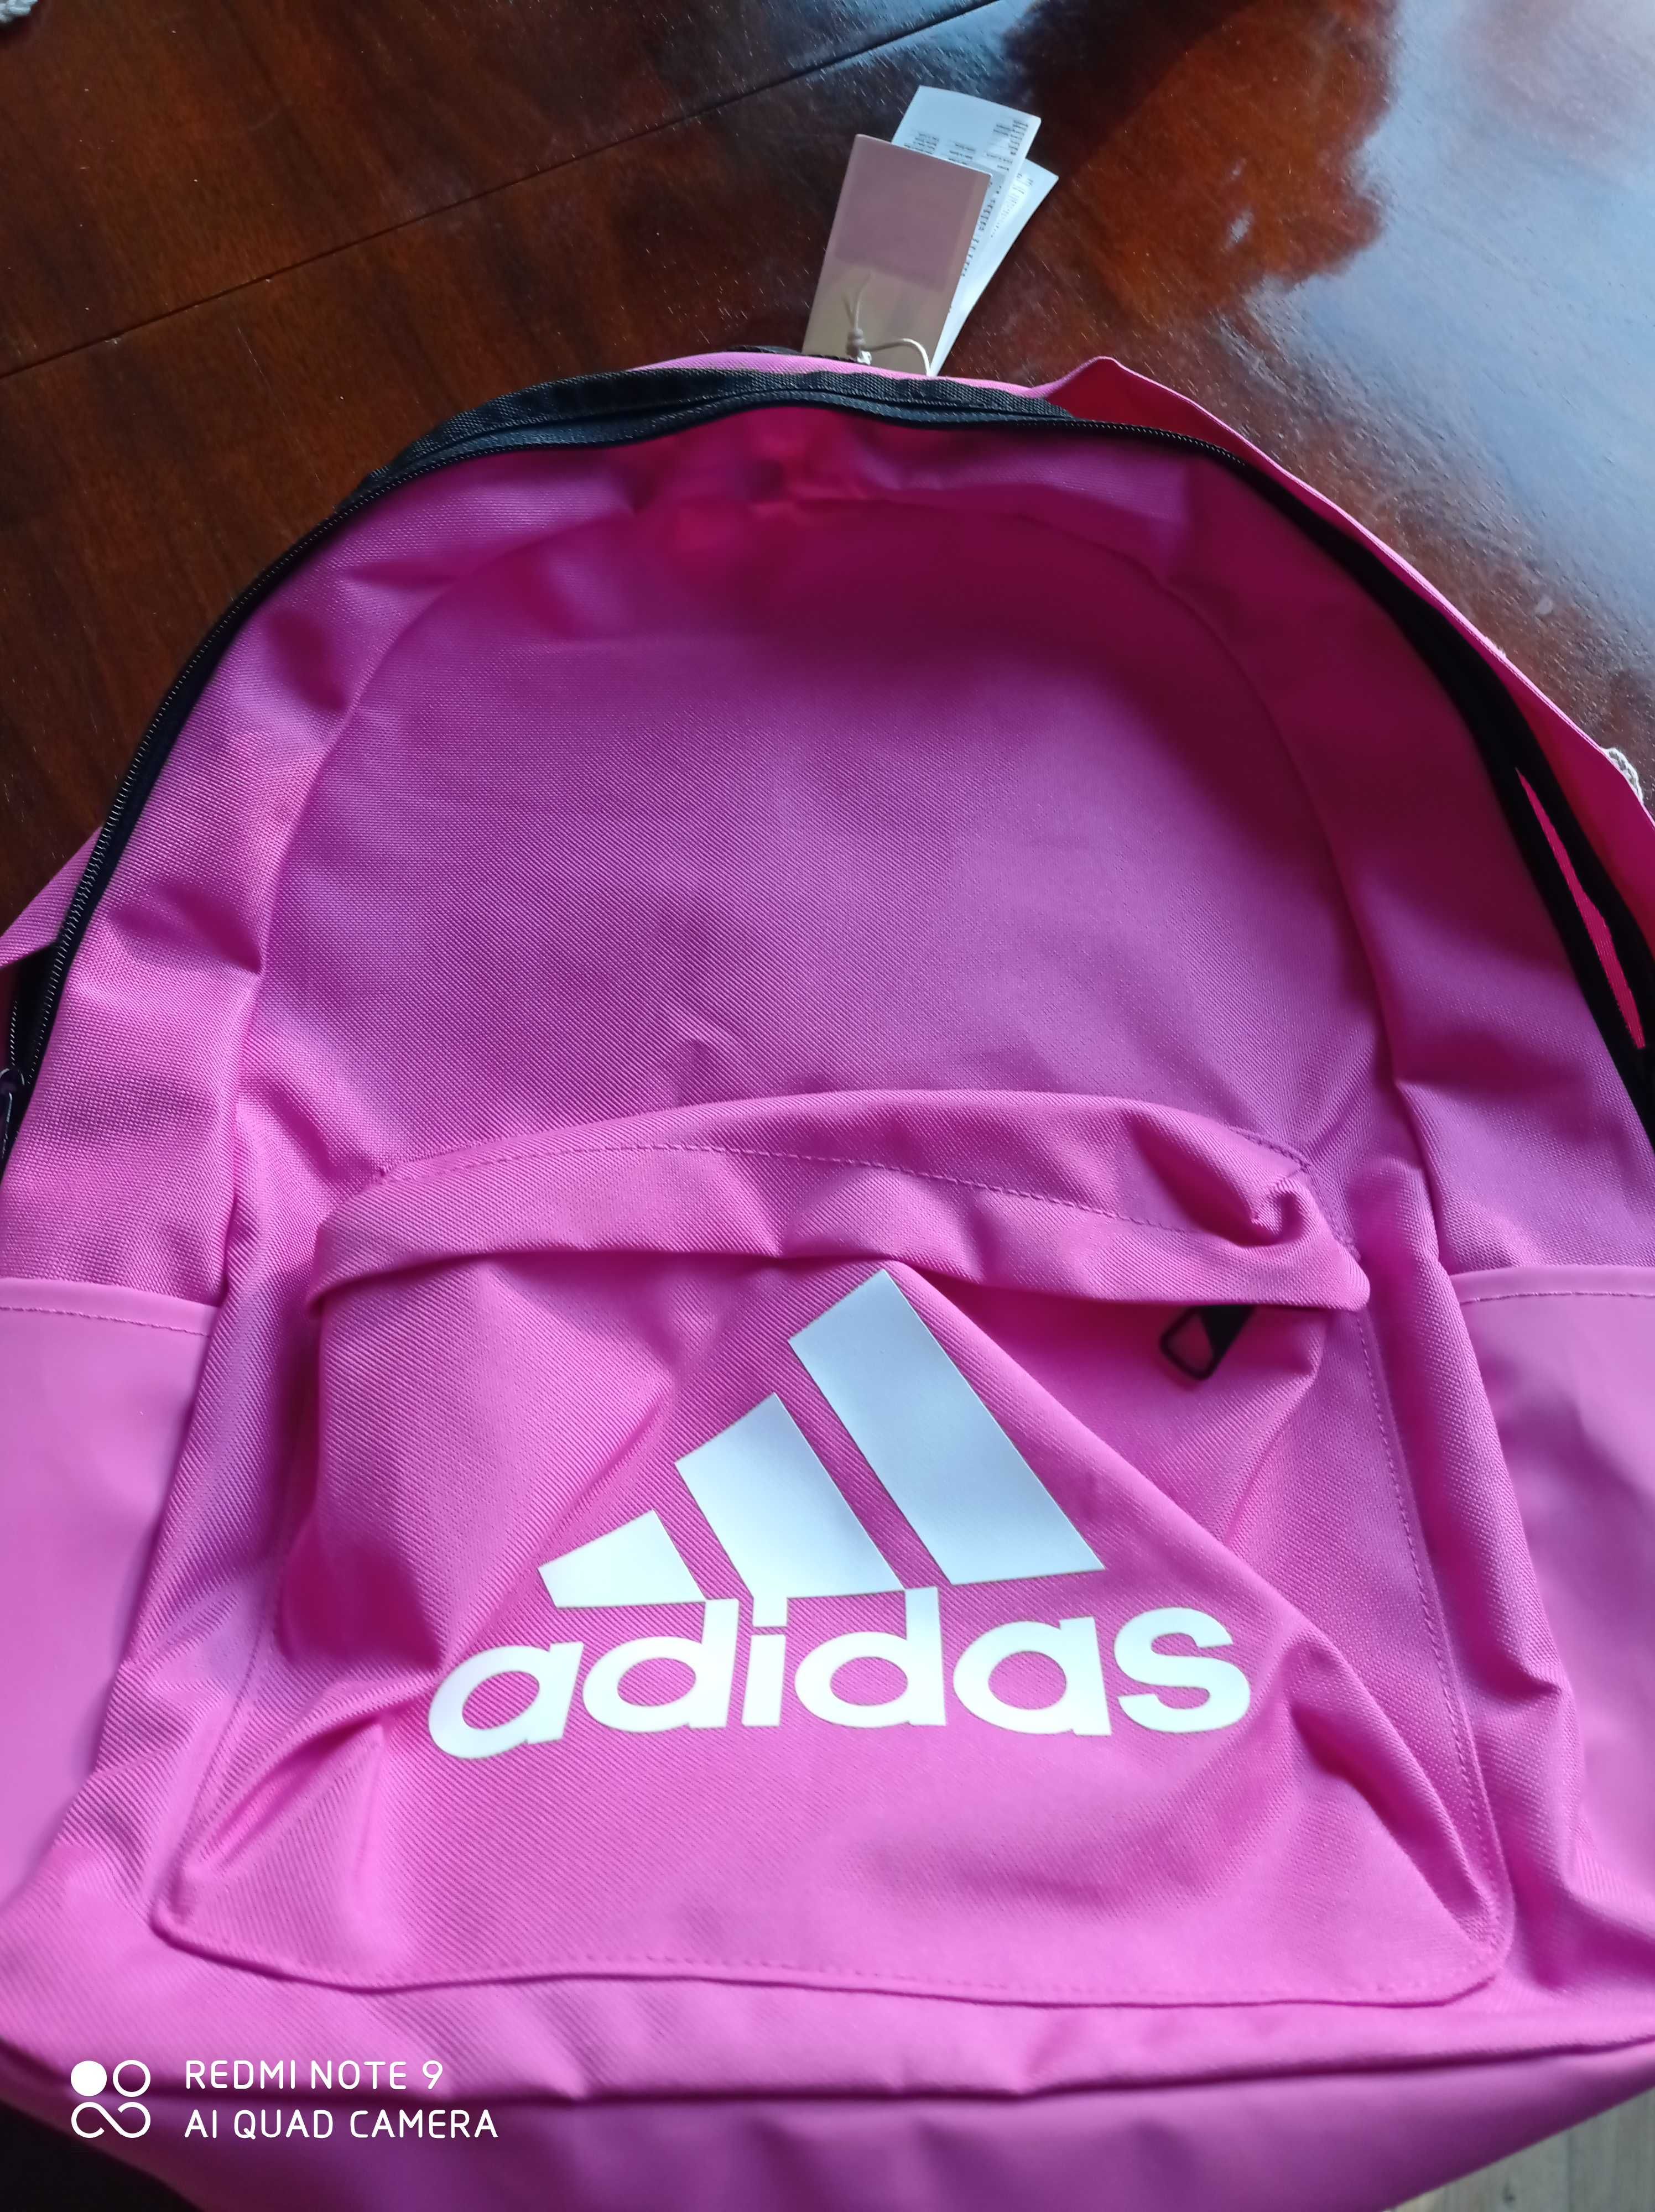 Adidas plecak sportowy, szkolny